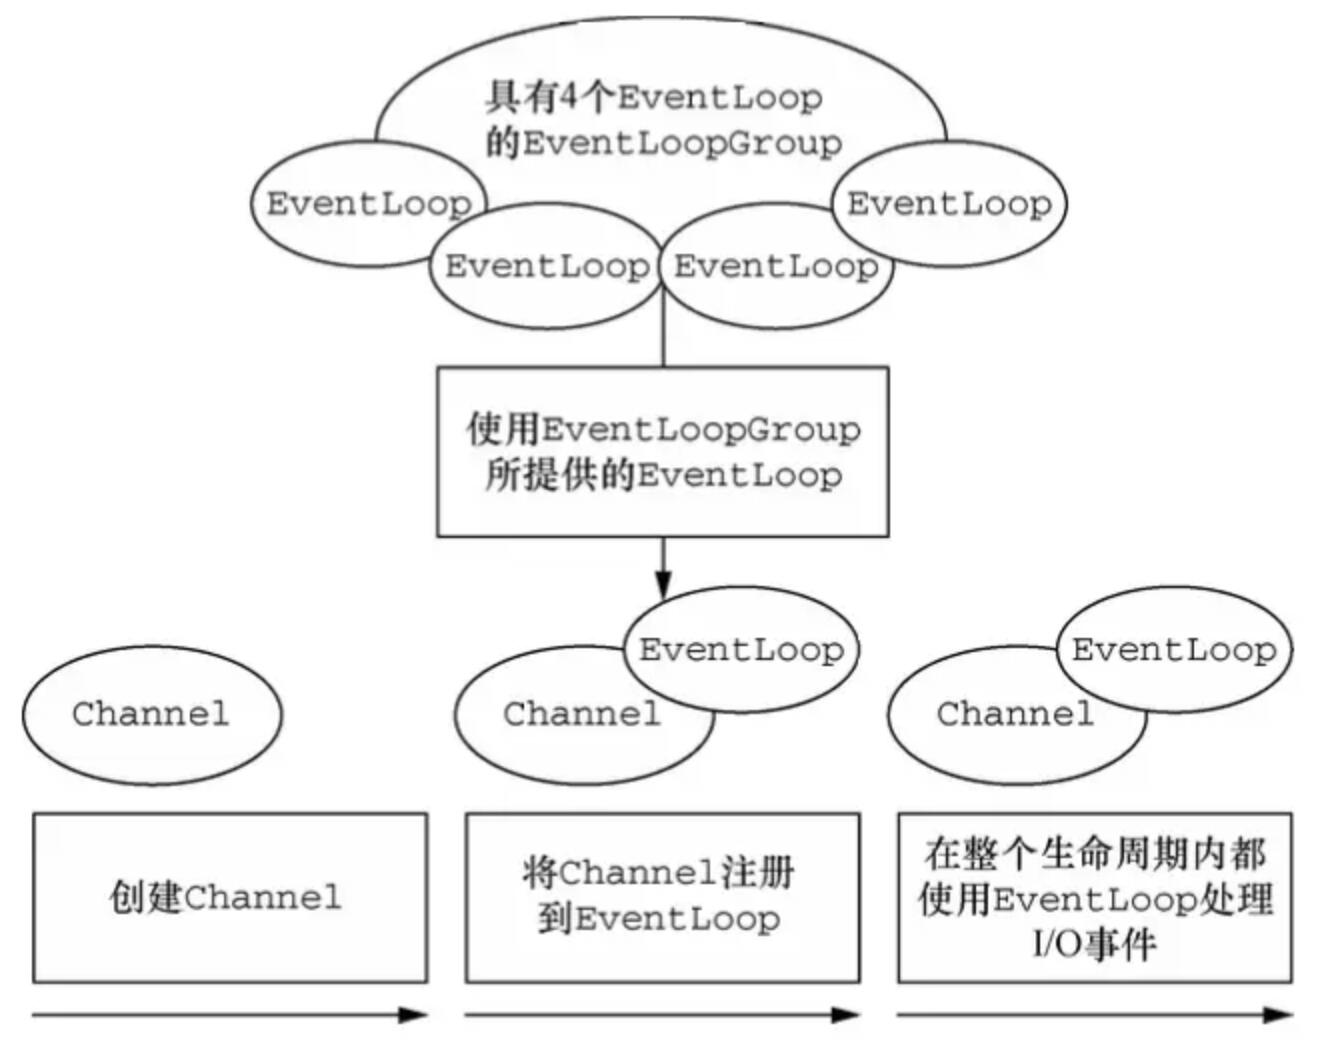 Channel-EventLoop-EventLoopGroup